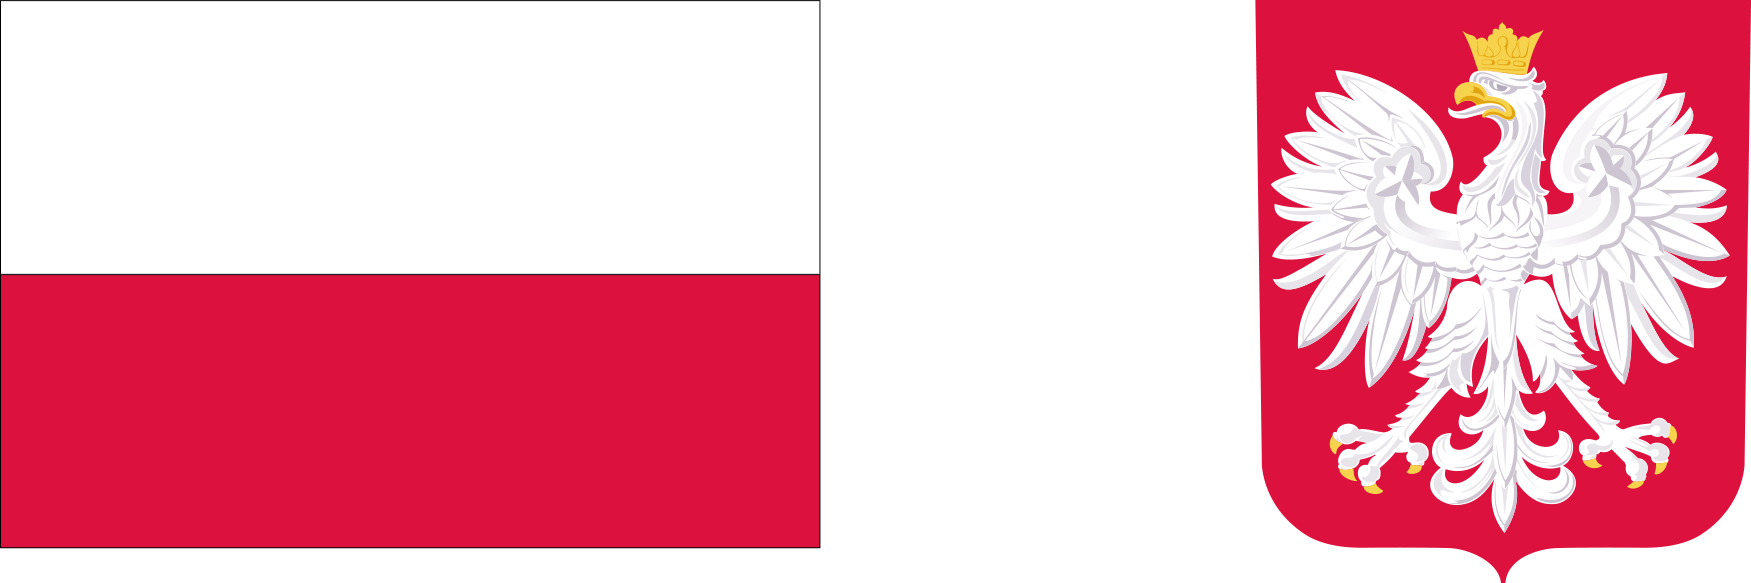 Logotyp - Program AON - biało-czerwona flaga państwowa oraz godło Rzeczypospolitej Polskiej